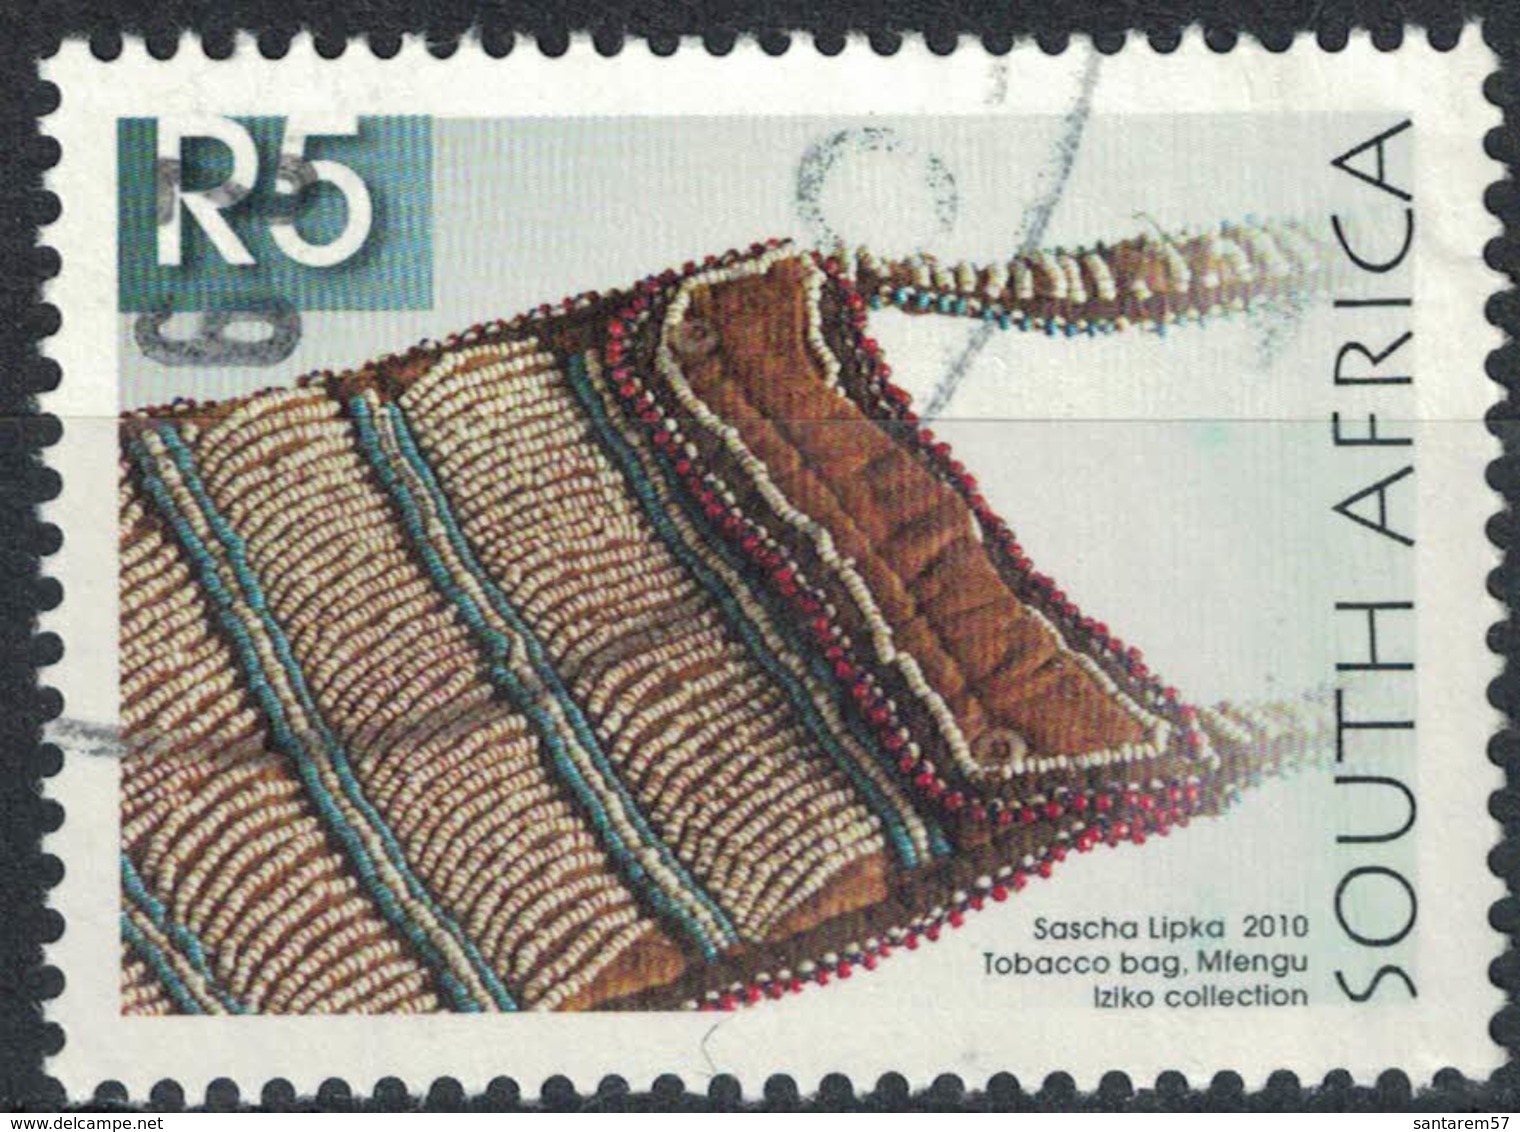 Afrique Du Sud 2010 Oblitération Ronde Used Stamp Sascha Lipka Sac à Tabac Tobacco Bag - Used Stamps